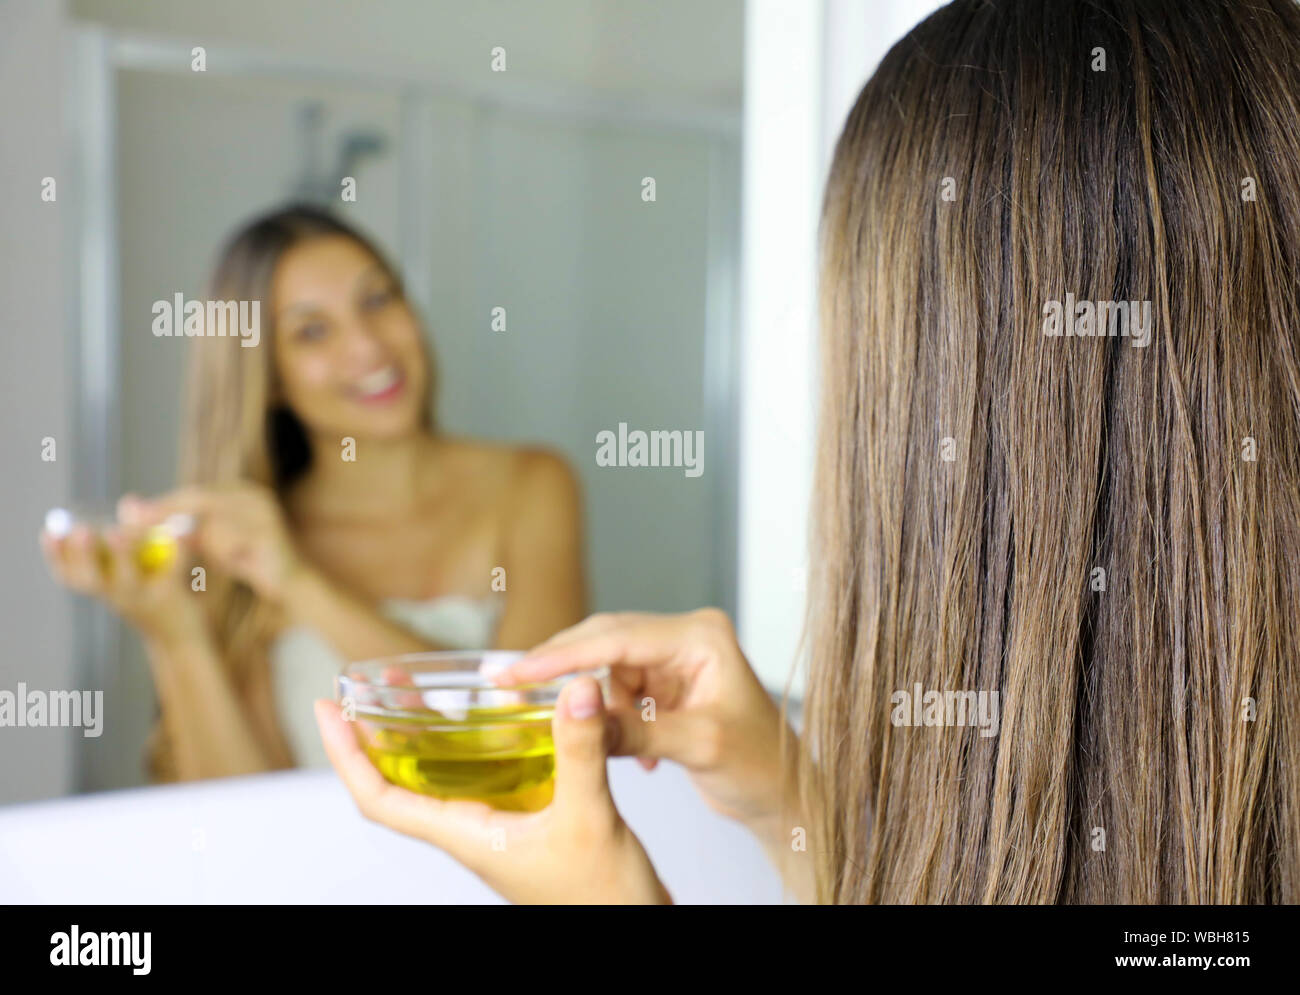 Junge Frau mit Olivenöl Maske für die Haare vor dem Spiegel. Hair Care  Konzept. Fokus auf das Haar Stockfotografie - Alamy